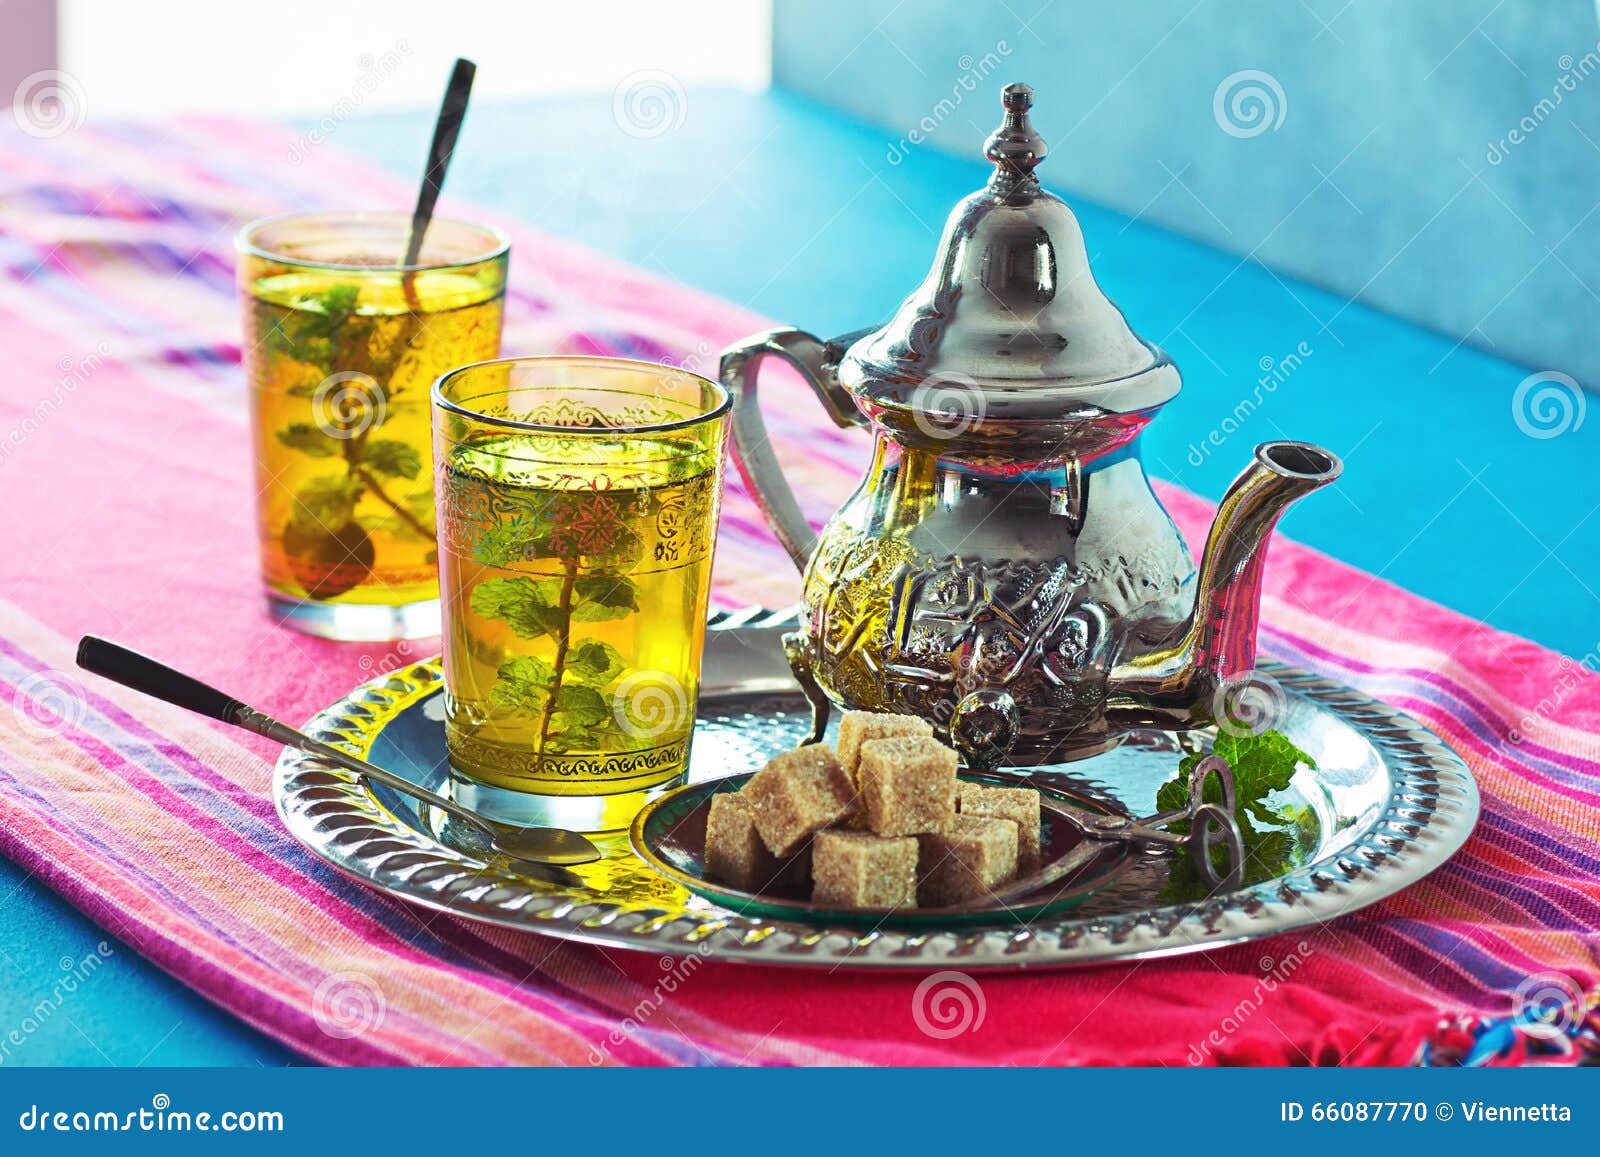 hot moroccan mint green tea